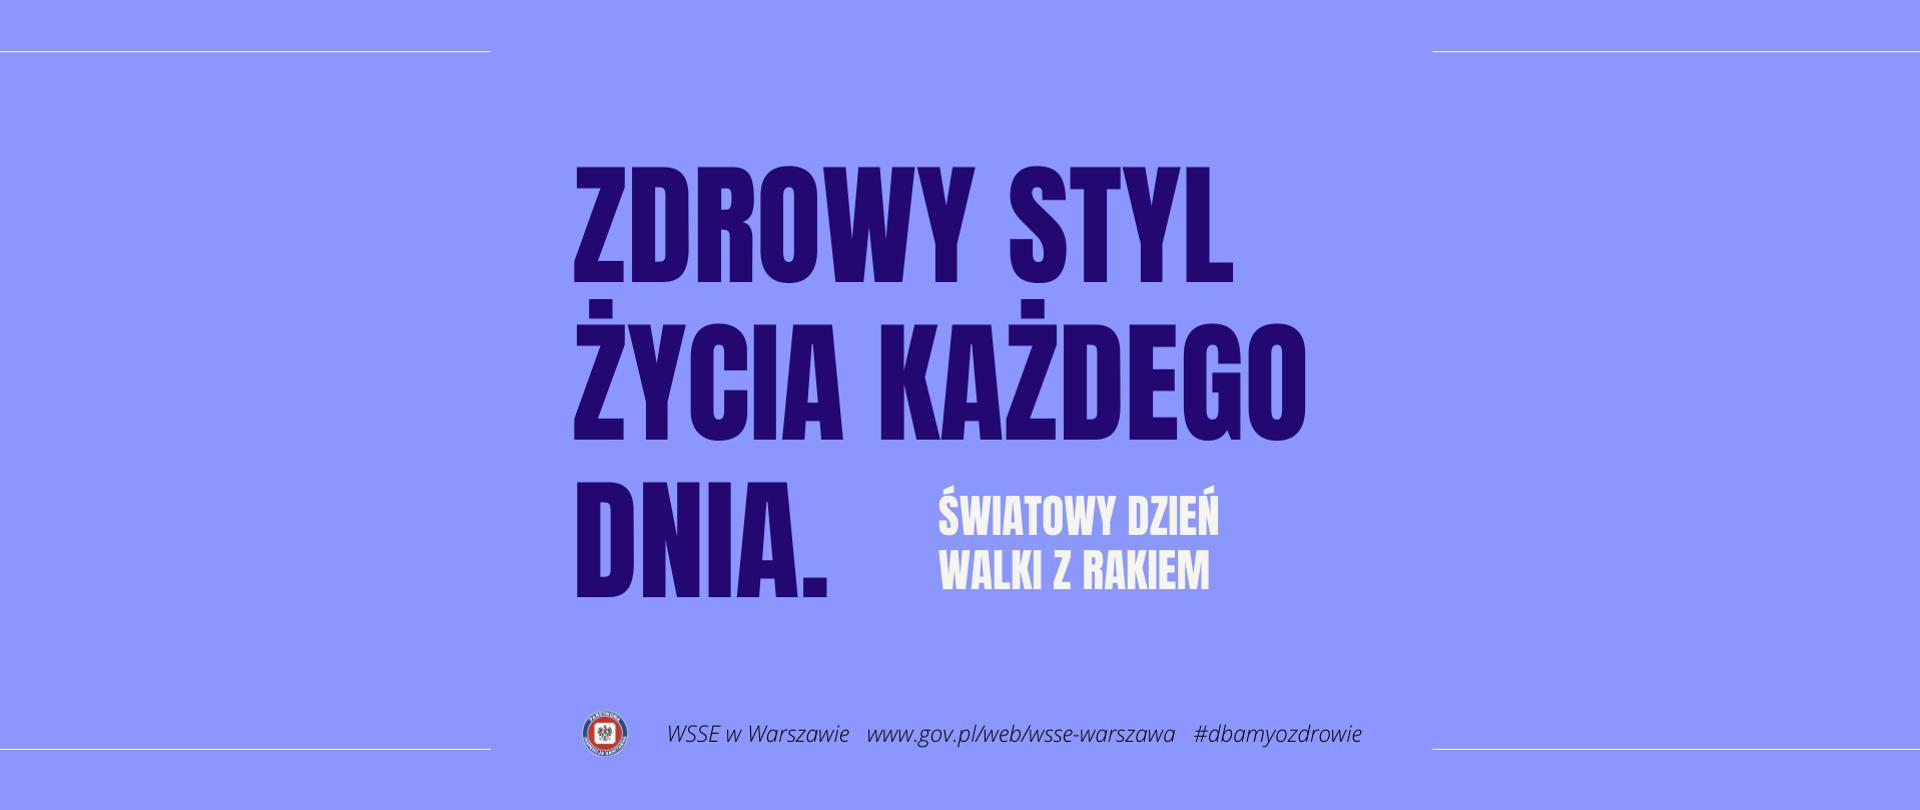 Obrazek z napisem "Zdrowy styl życia każdego dnia. Światowy dzień walki z rakiem. WSSE w Warszawie. www.gov.pl/wsse-warszawa, #dbamyozdrowie "